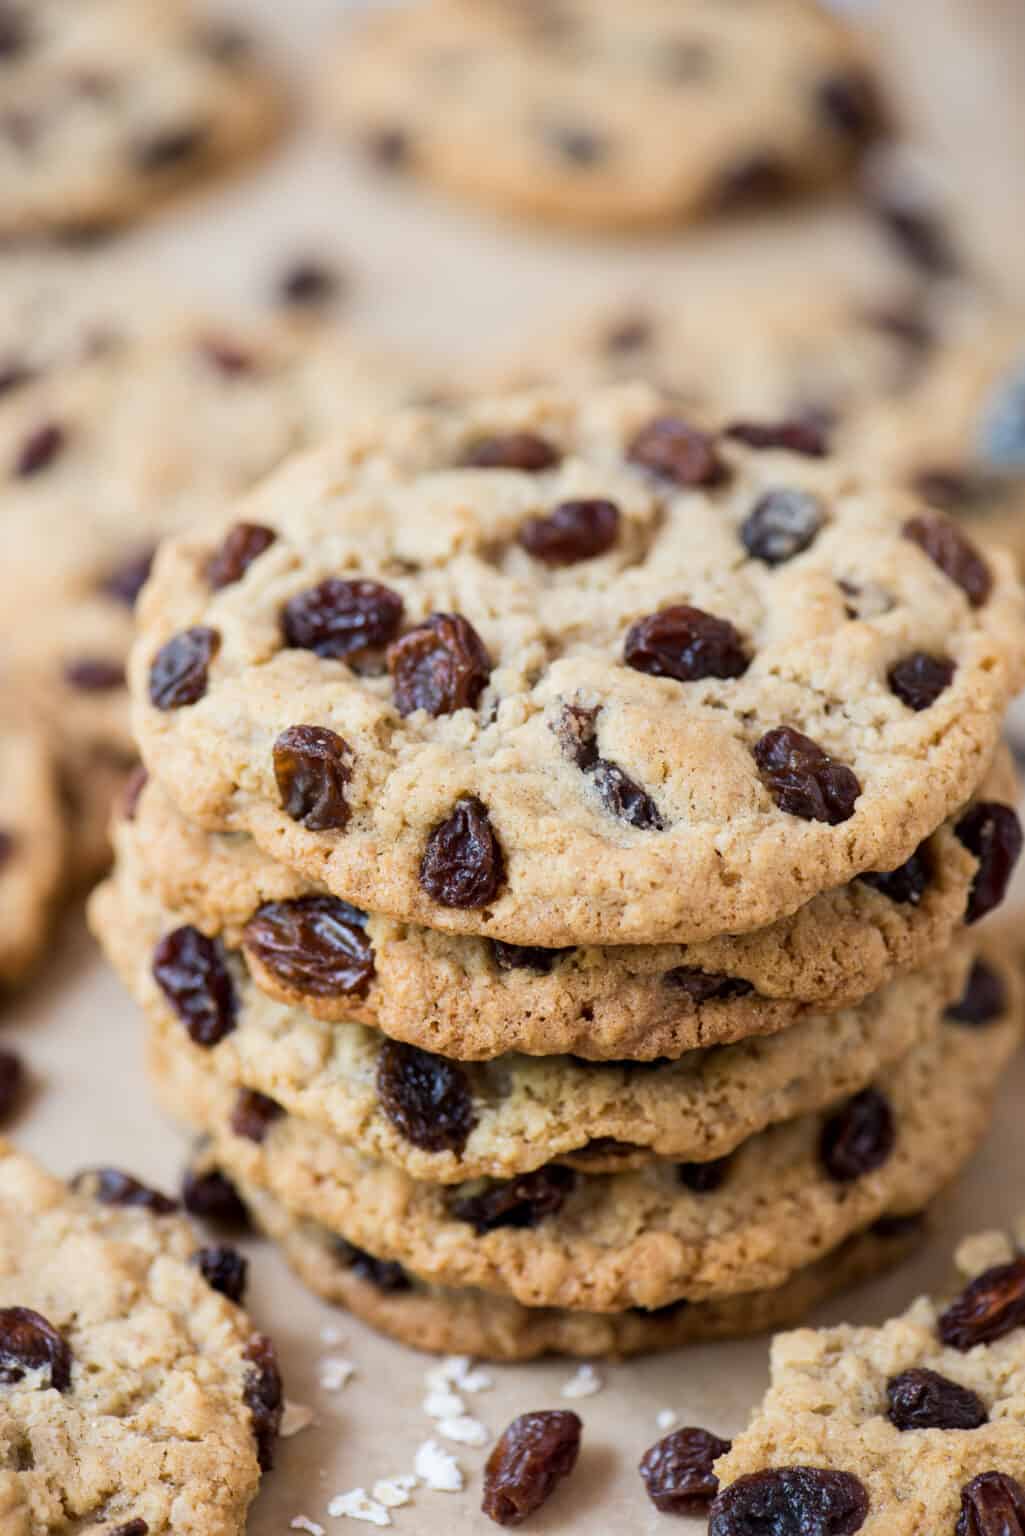 Easy Chocolate Oatmeal Raisin Cookies to Make at Home – How to Make ...